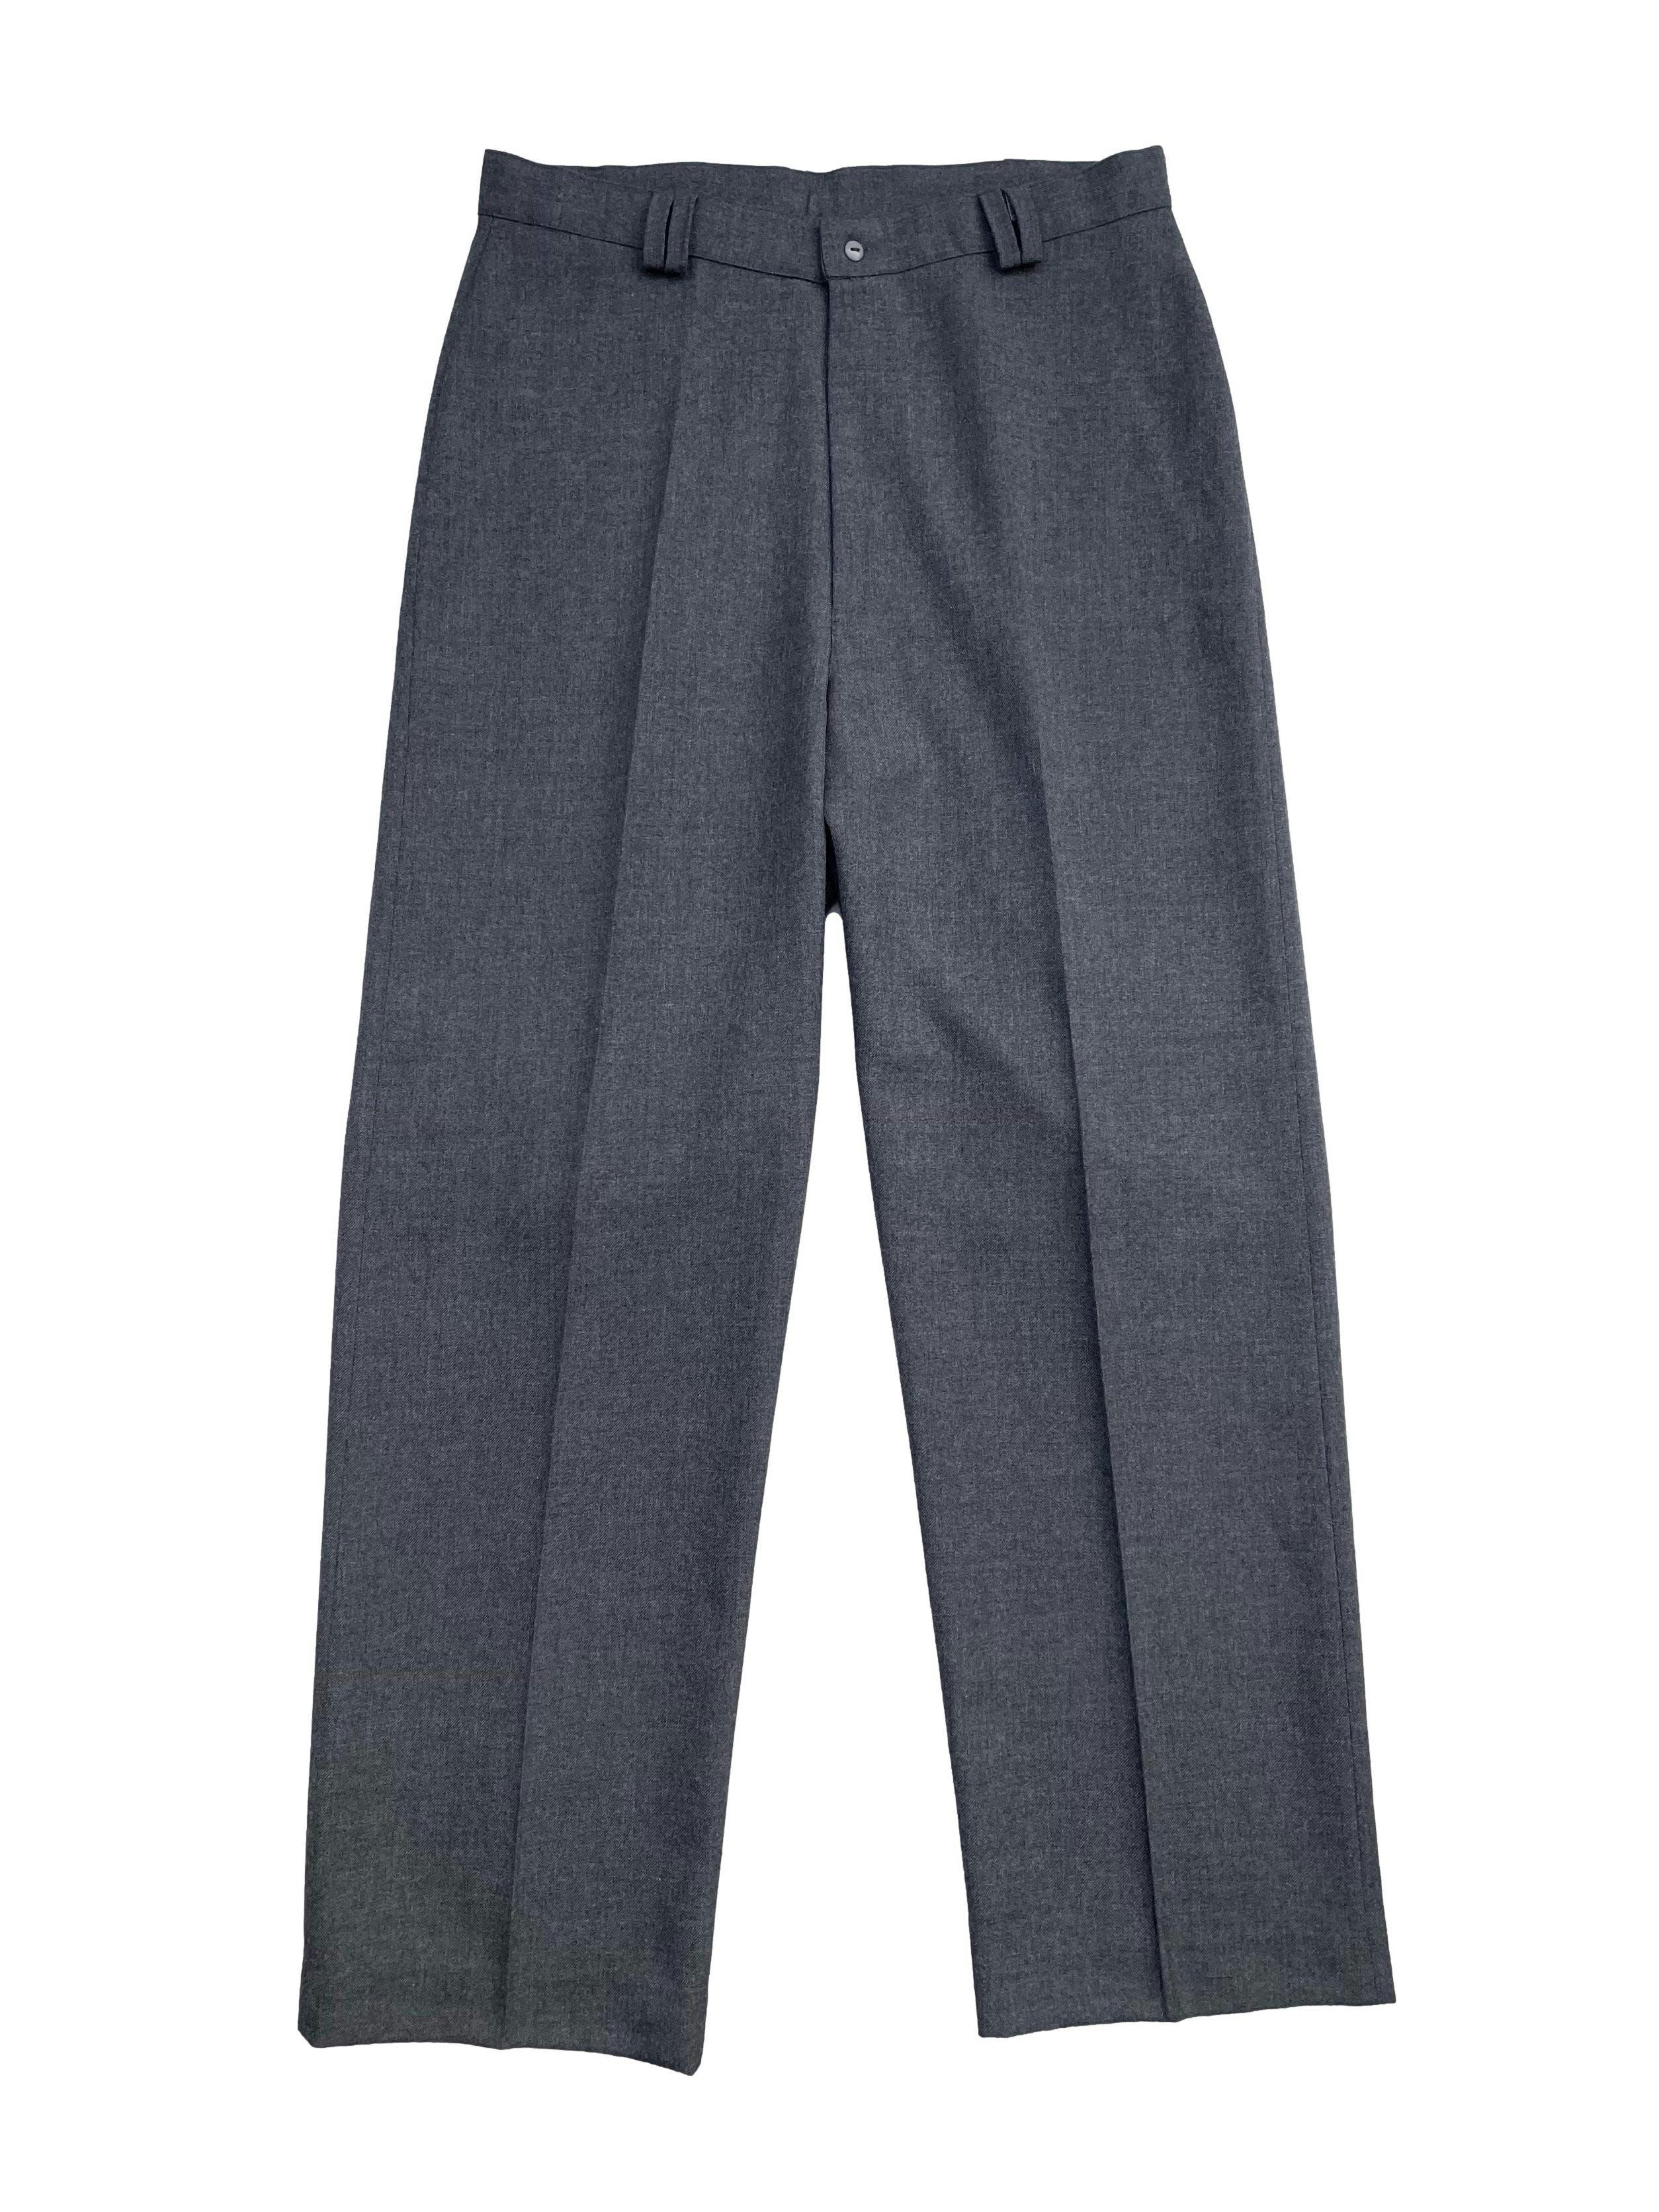 Pantalón sastre vintage de tiro alto, pierna ancha y recta, pinzas en la espalda y cierre frontal. Cintura 76cm, Largo 105cm.